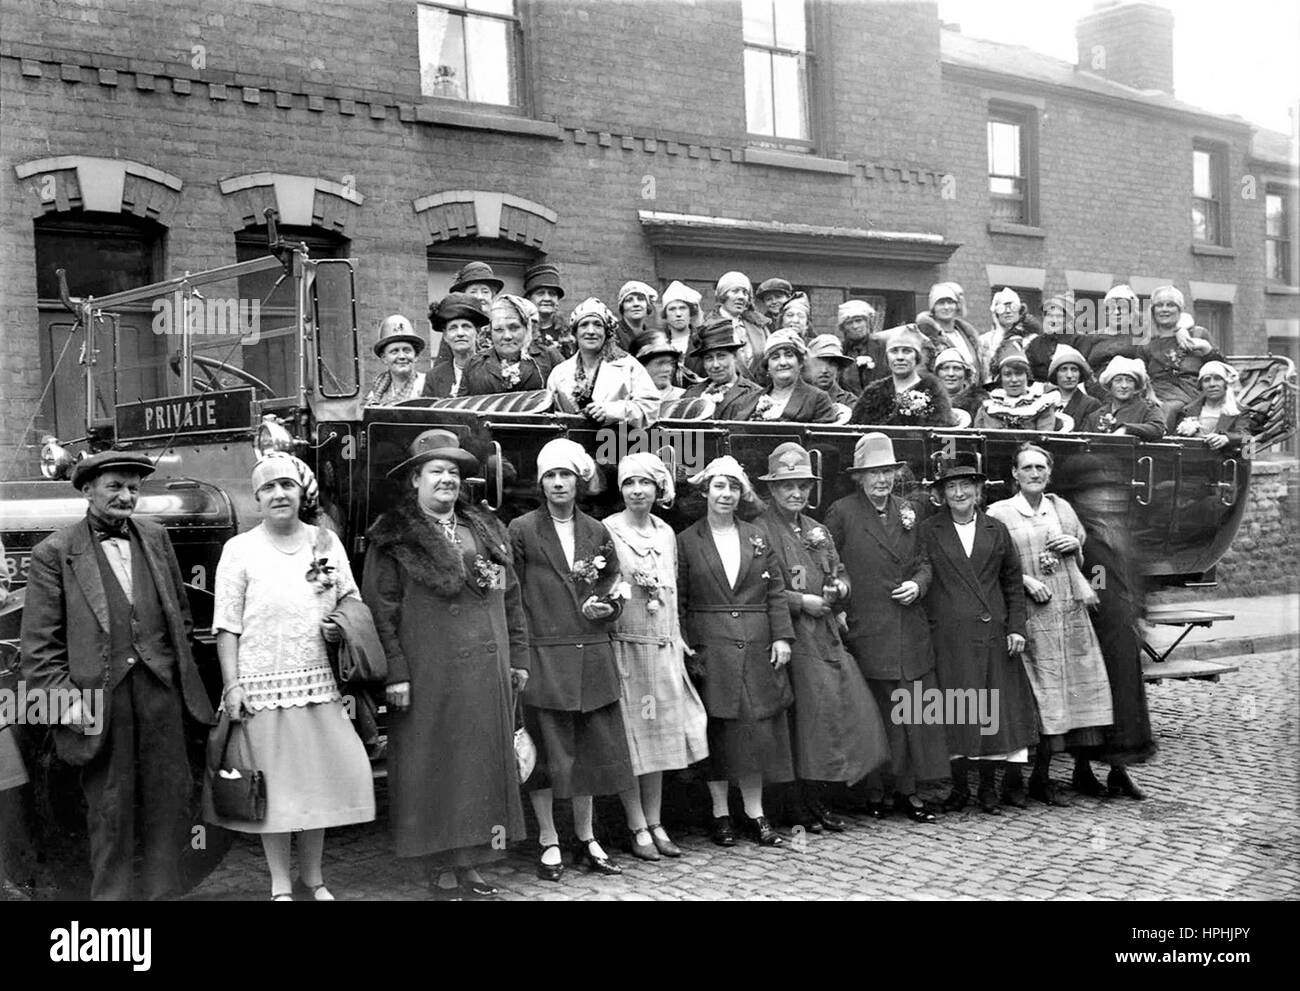 Les travailleuses de l'Adams & Company fabrique de dentelle à Stoney Street, Nottingham, à bord d'un charabanc pour leur journée annuelle en 1927. Banque D'Images